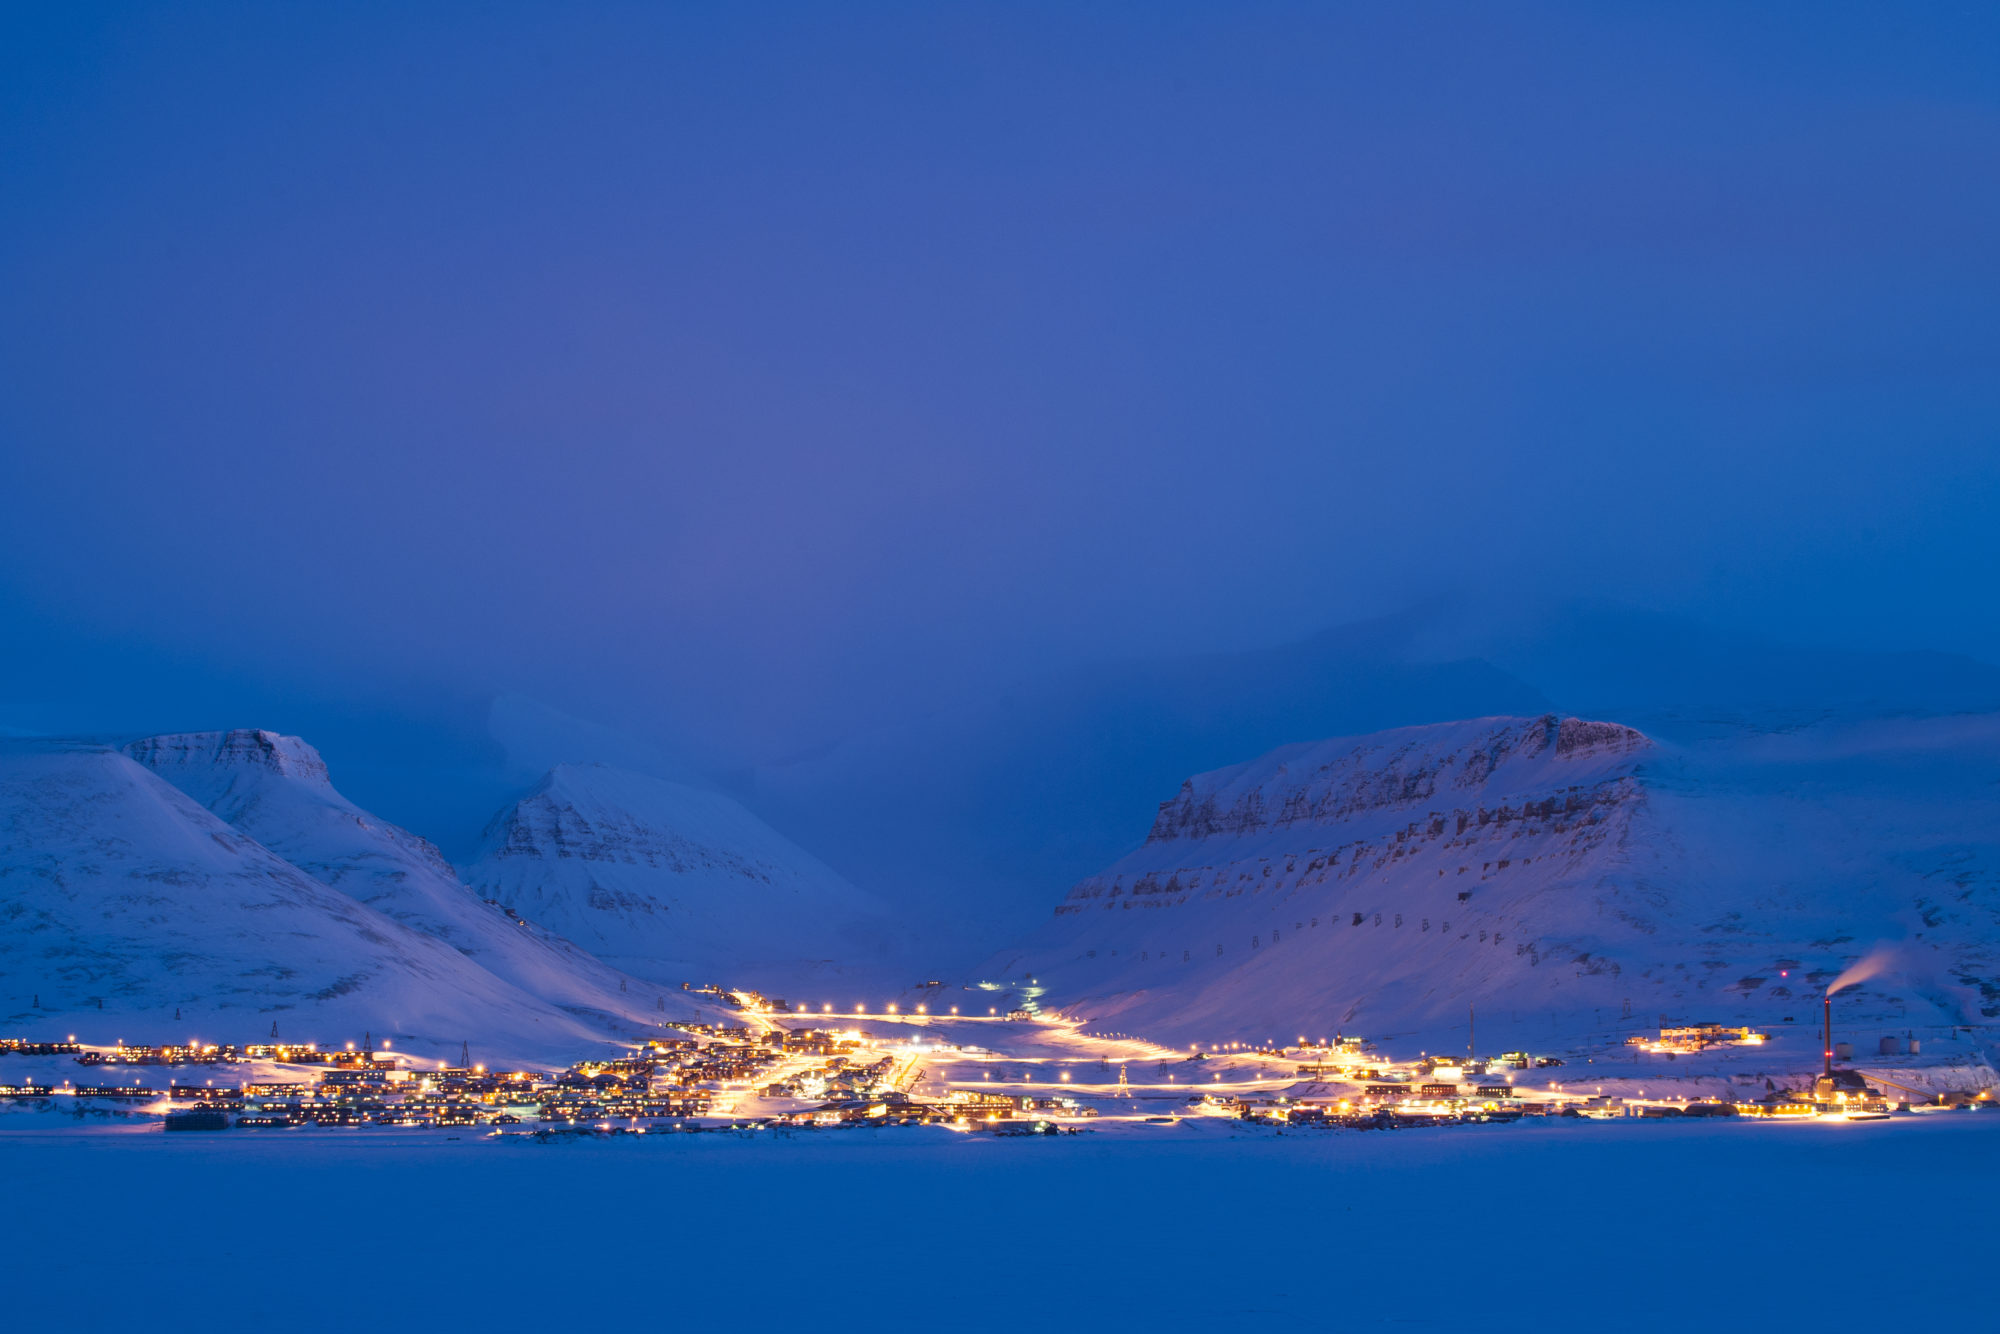 Nattbilde tatt fra fly over Longeyarbyen. Byen ses opplyst, med himmel og fjell i bakgrunnen, begge deler blå-lilla i kveldslyset.